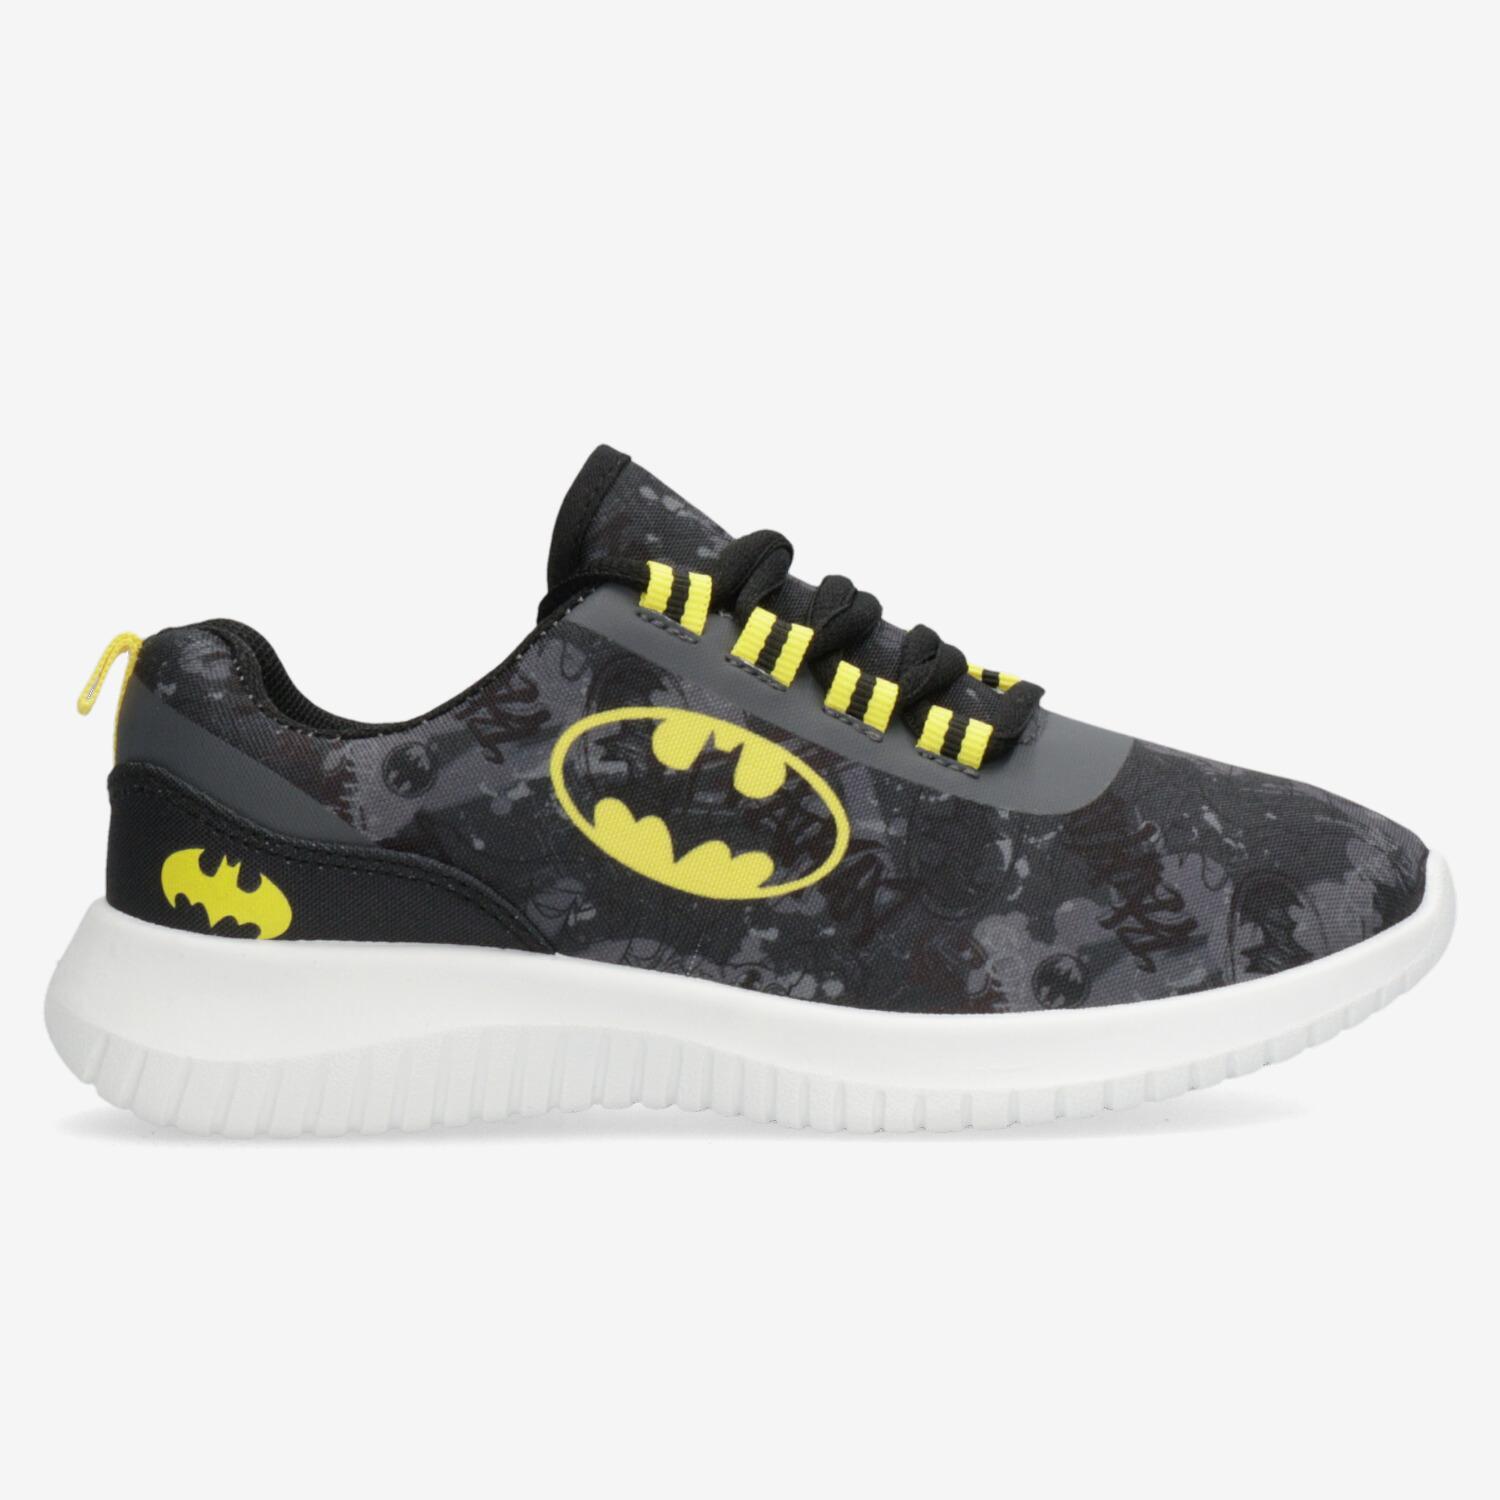 Chaussures Batman - Noir - Chaussures Baskets Garçon sports taille 30